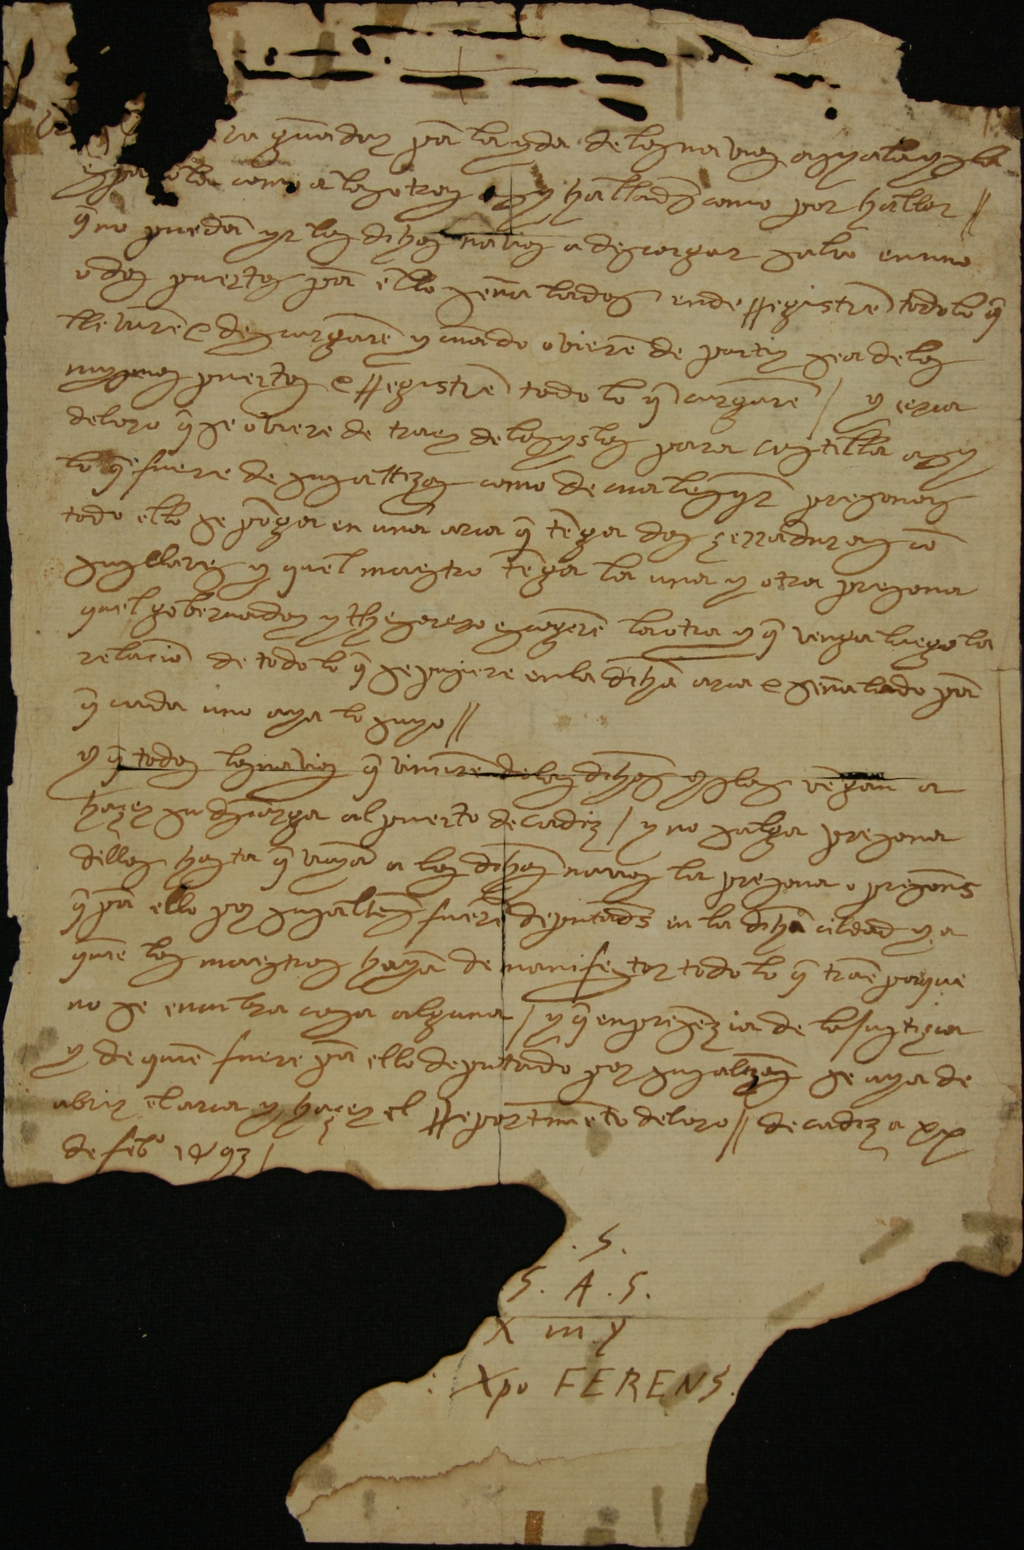 colon manuscrito america, descubrimiento de america, cristobal colon